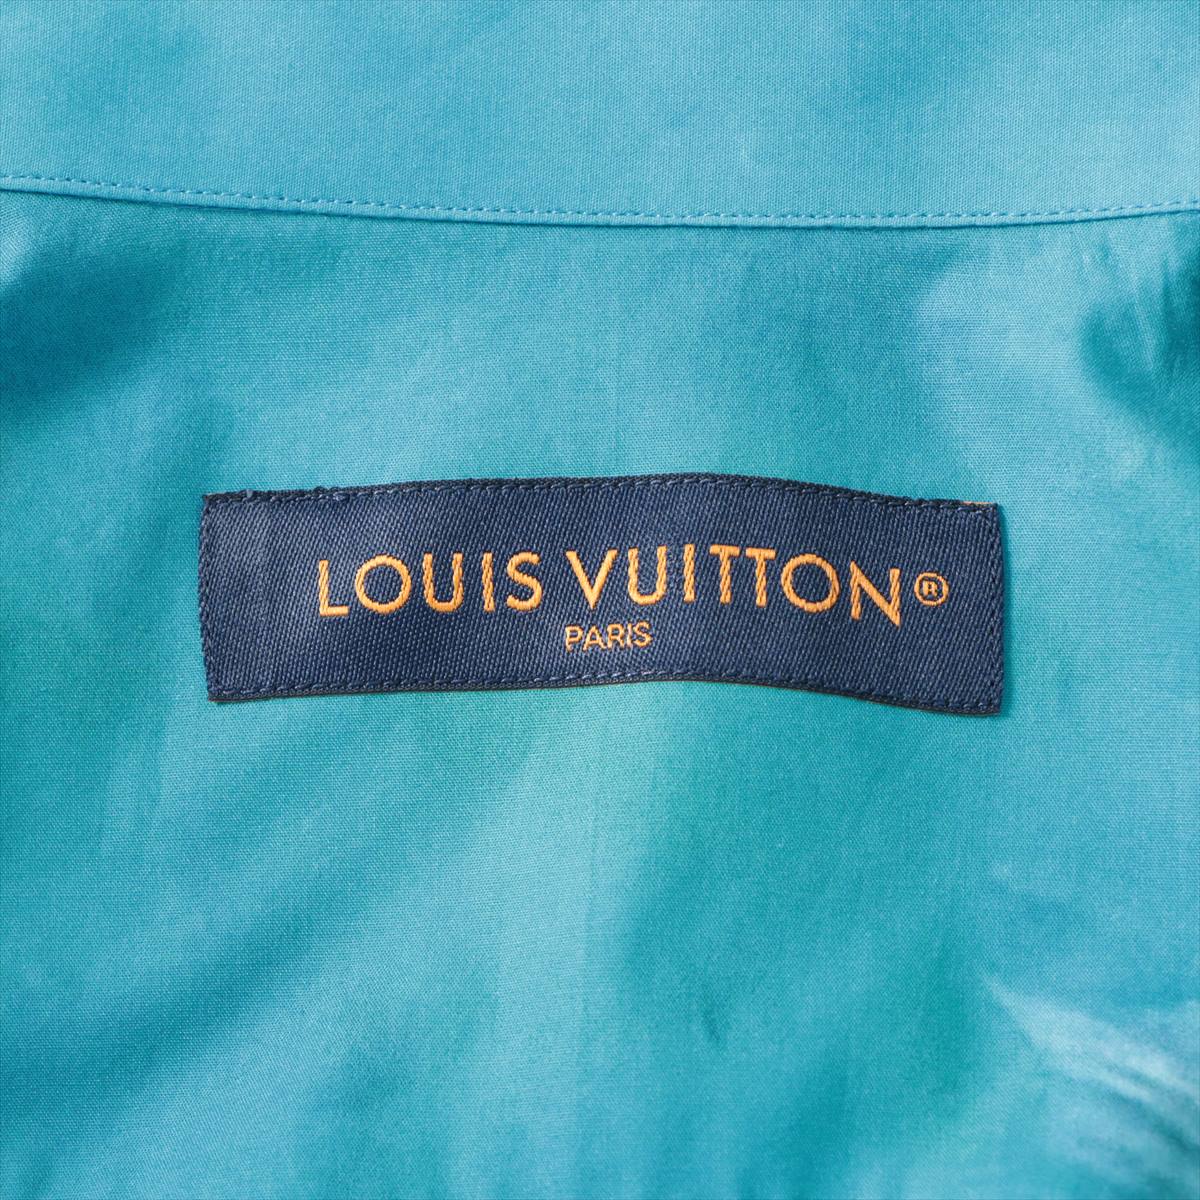 Louis Vuitton 23AW Cotton Shirt L Men's Multicolor  RM232 printed cotton short sleeve shirt Damier Check patterns